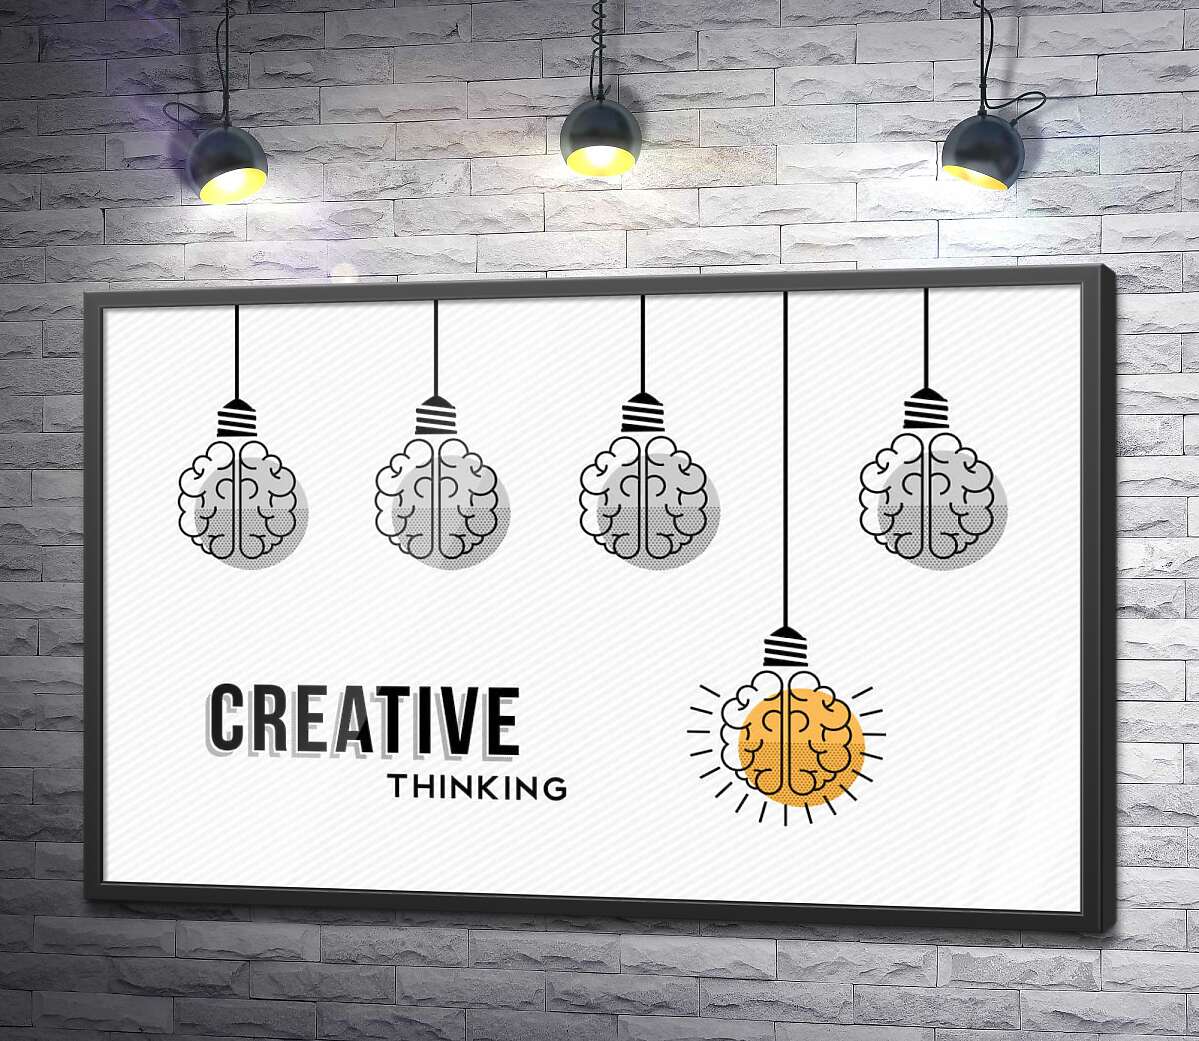 постер Гірлянда із лампочок над фразою "creative thinking"